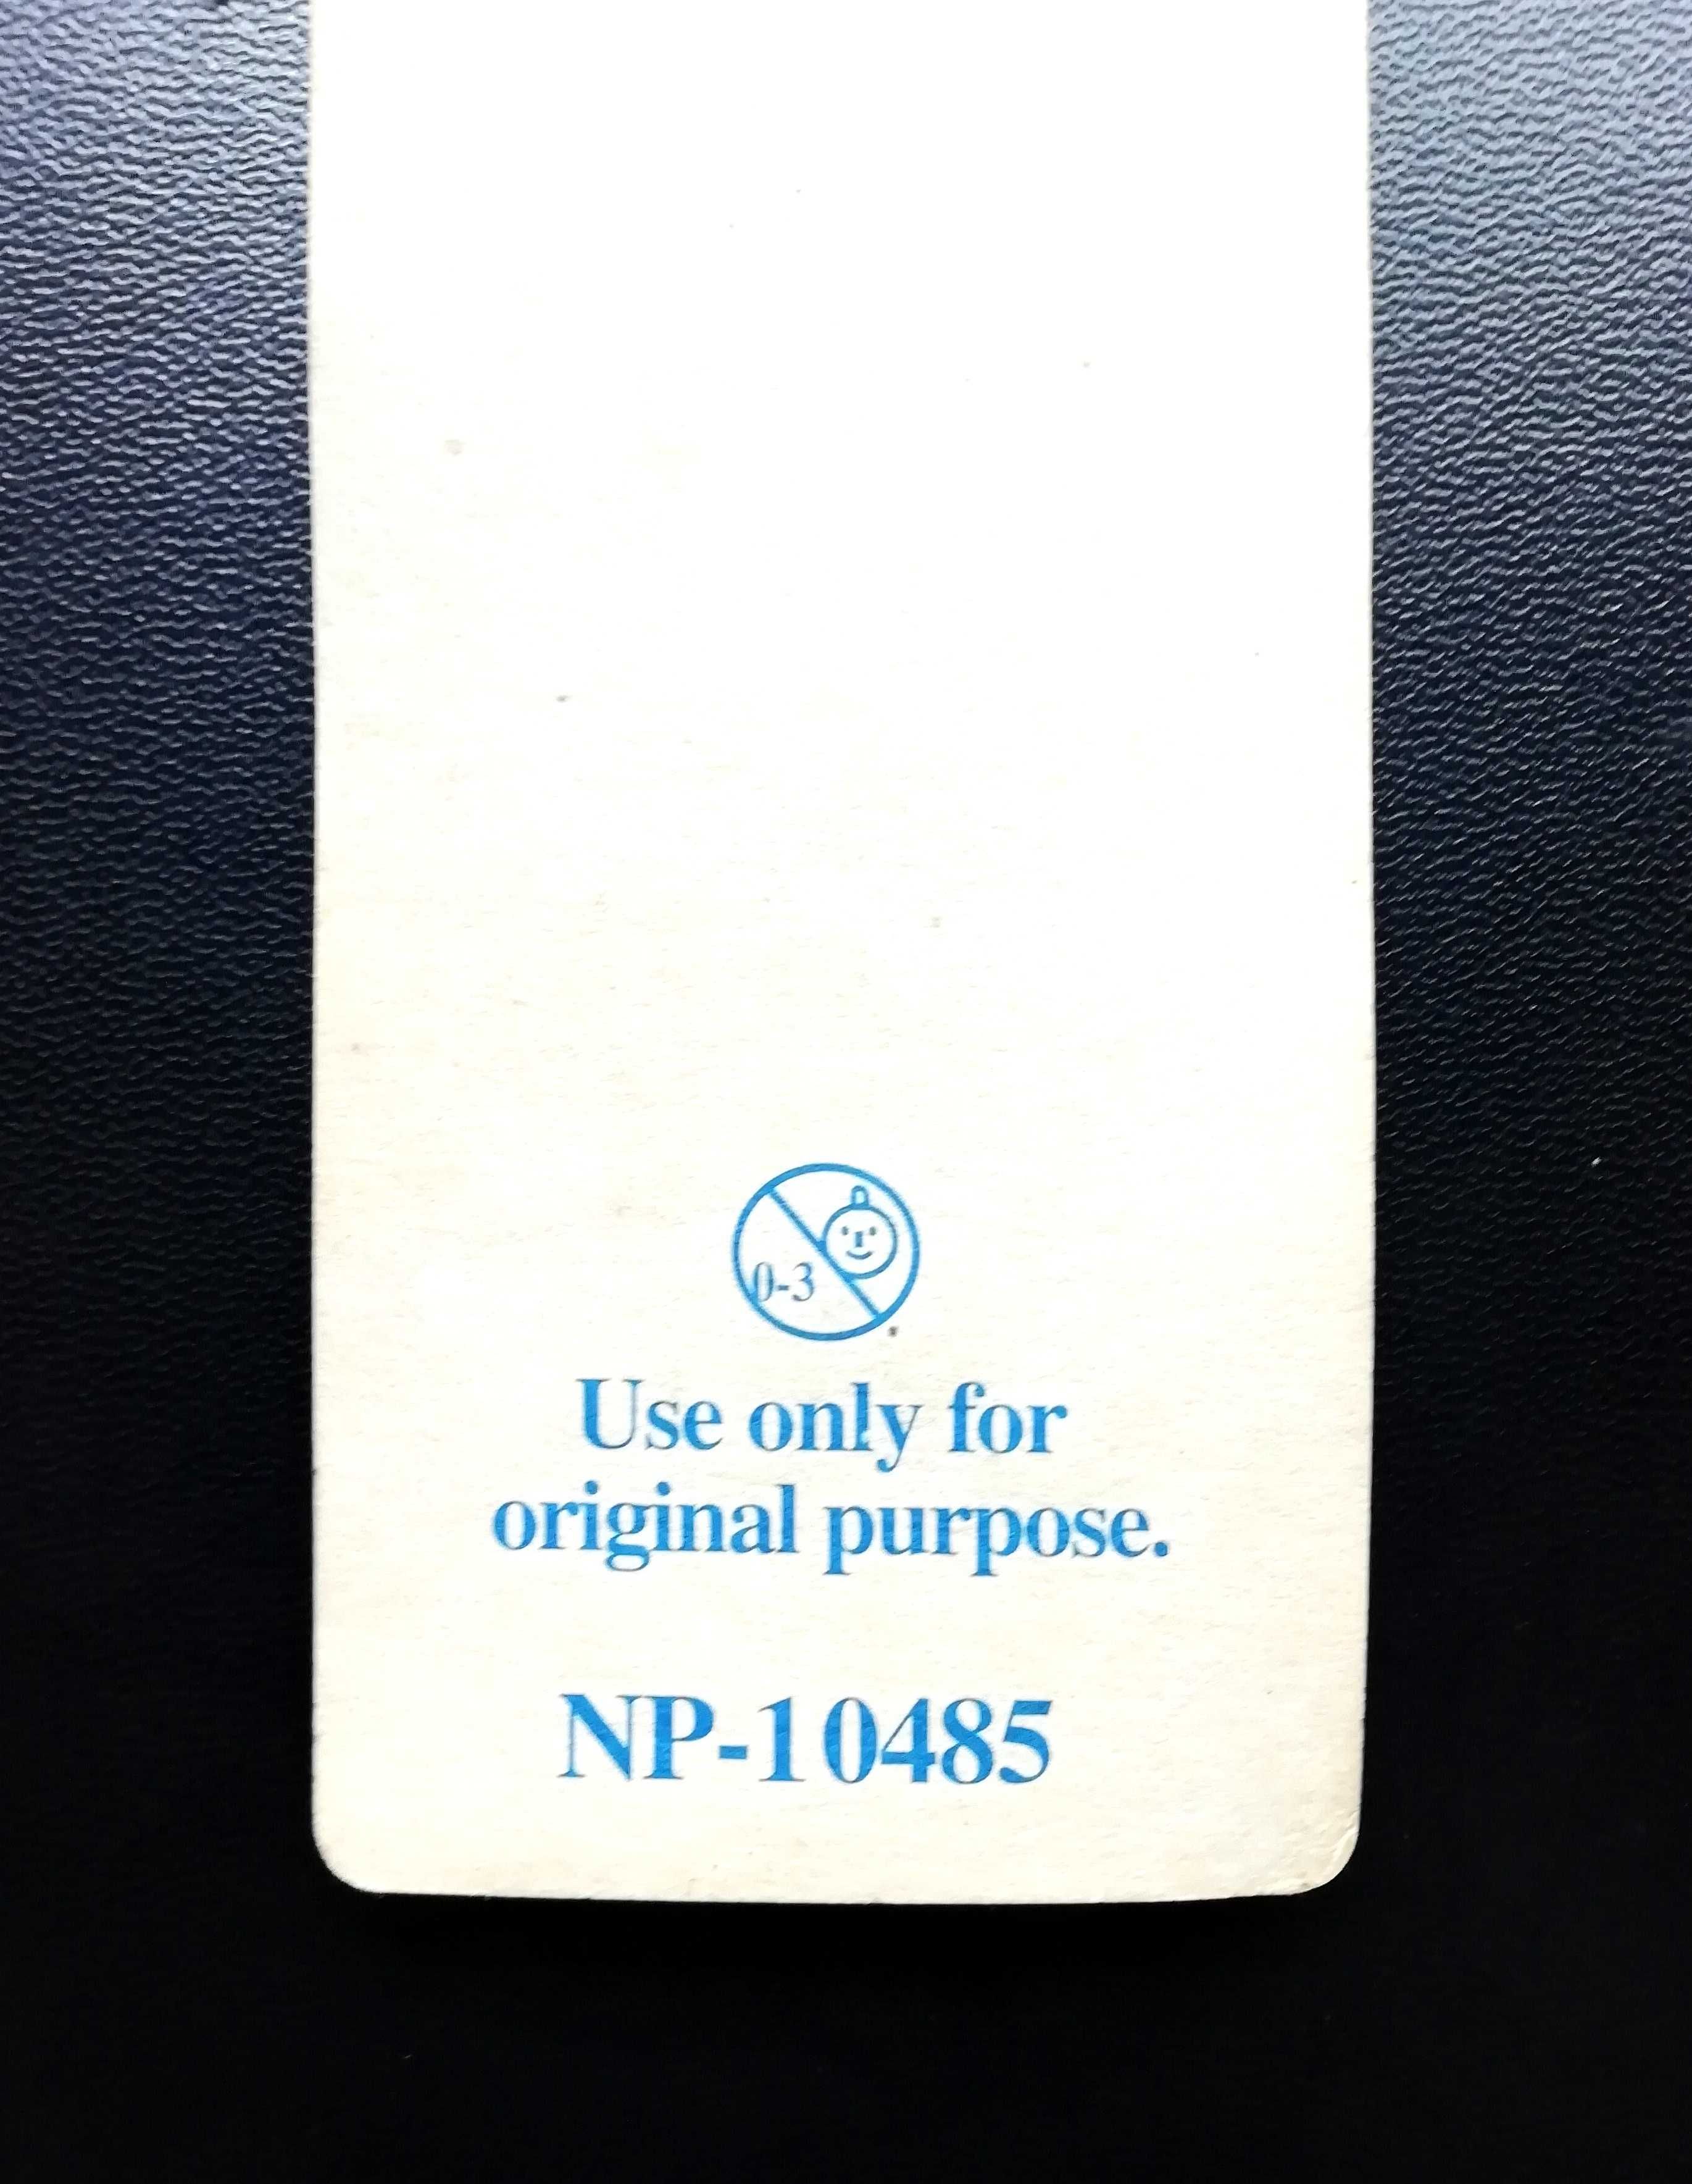 Lápis de coleção com borracha de TM Nokia 3310, novo em caixa